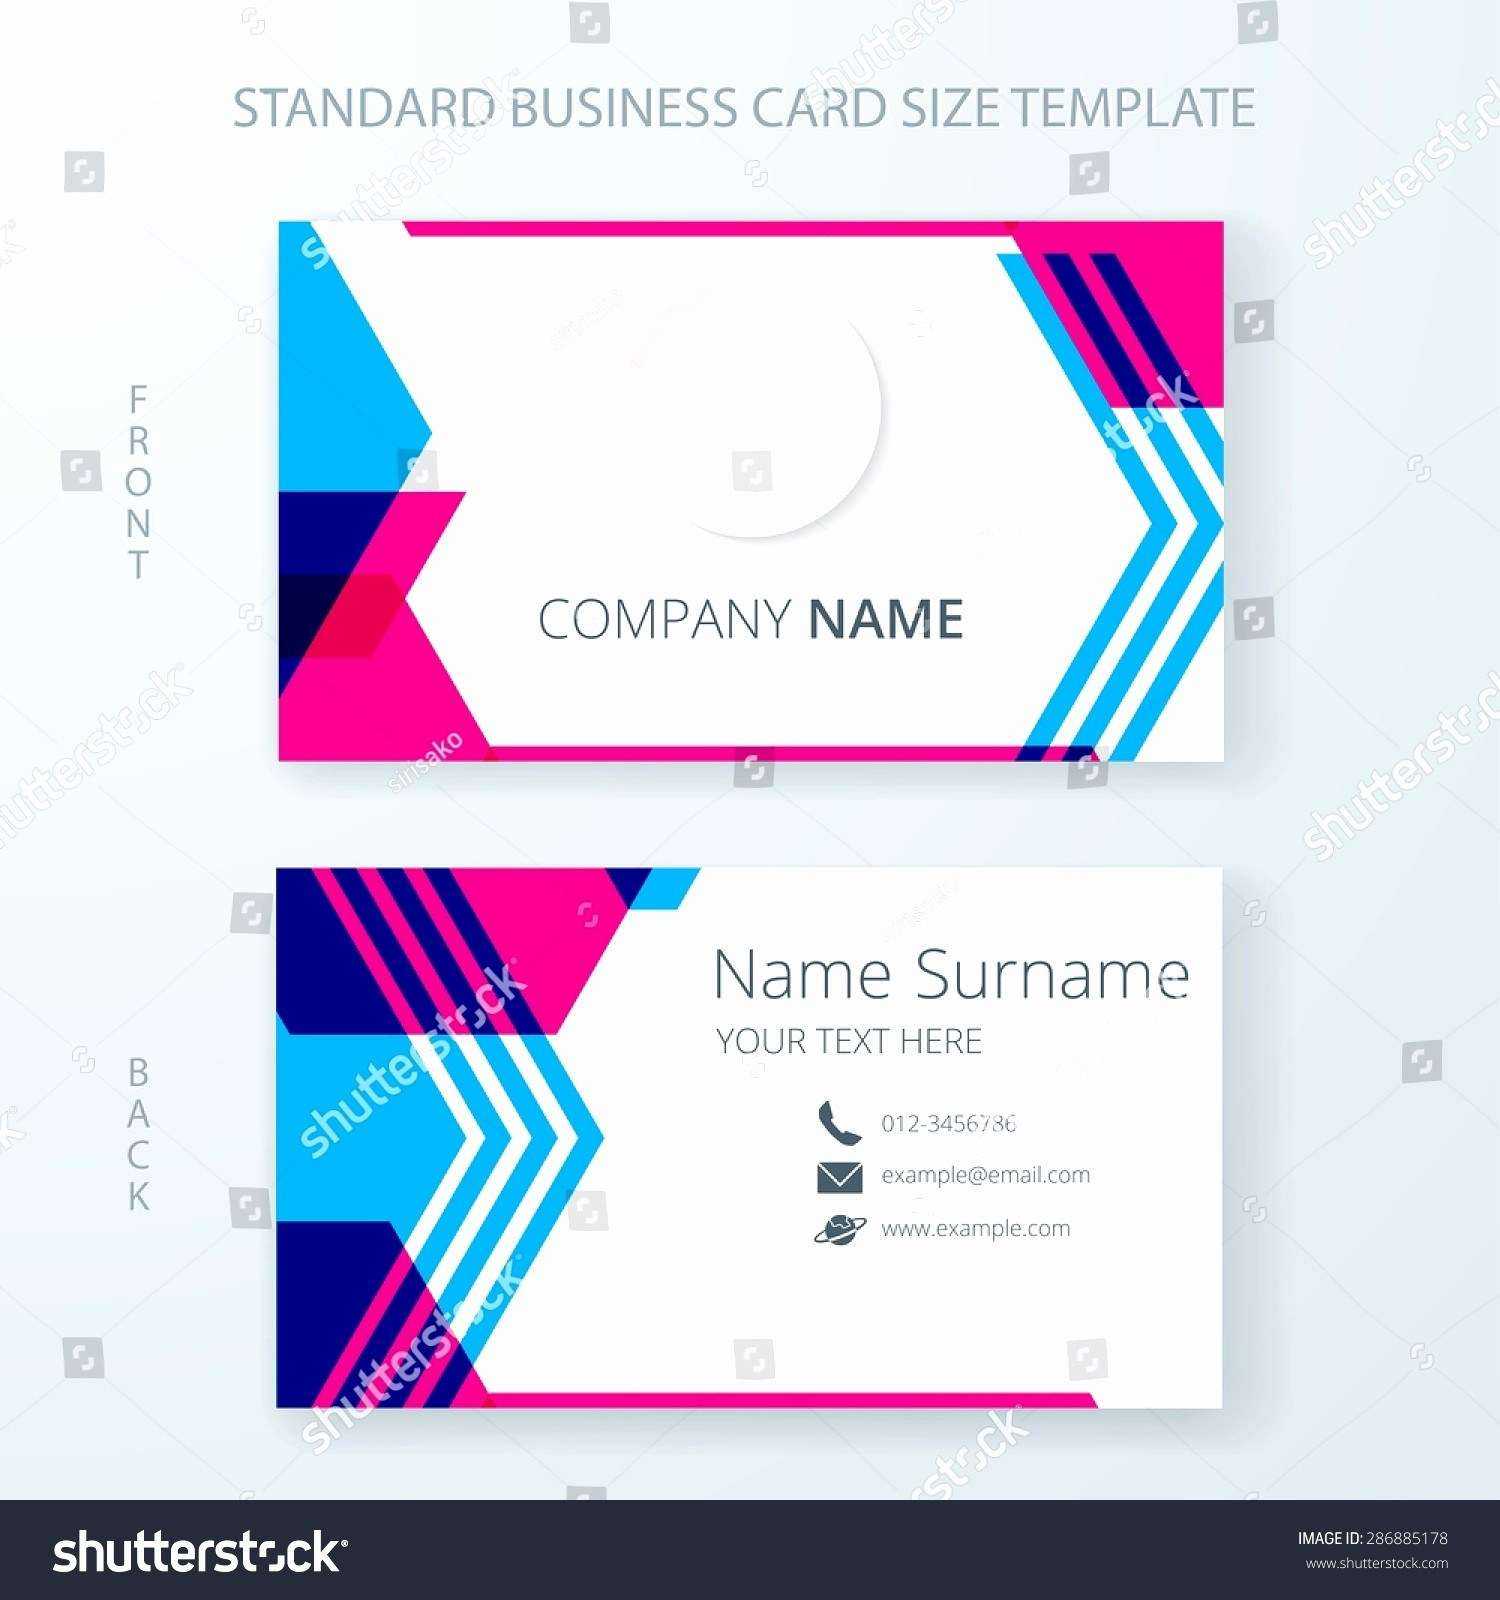 Gartner Business Cards Template Best Of Gartner Business With Regard To Gartner Business Cards Template